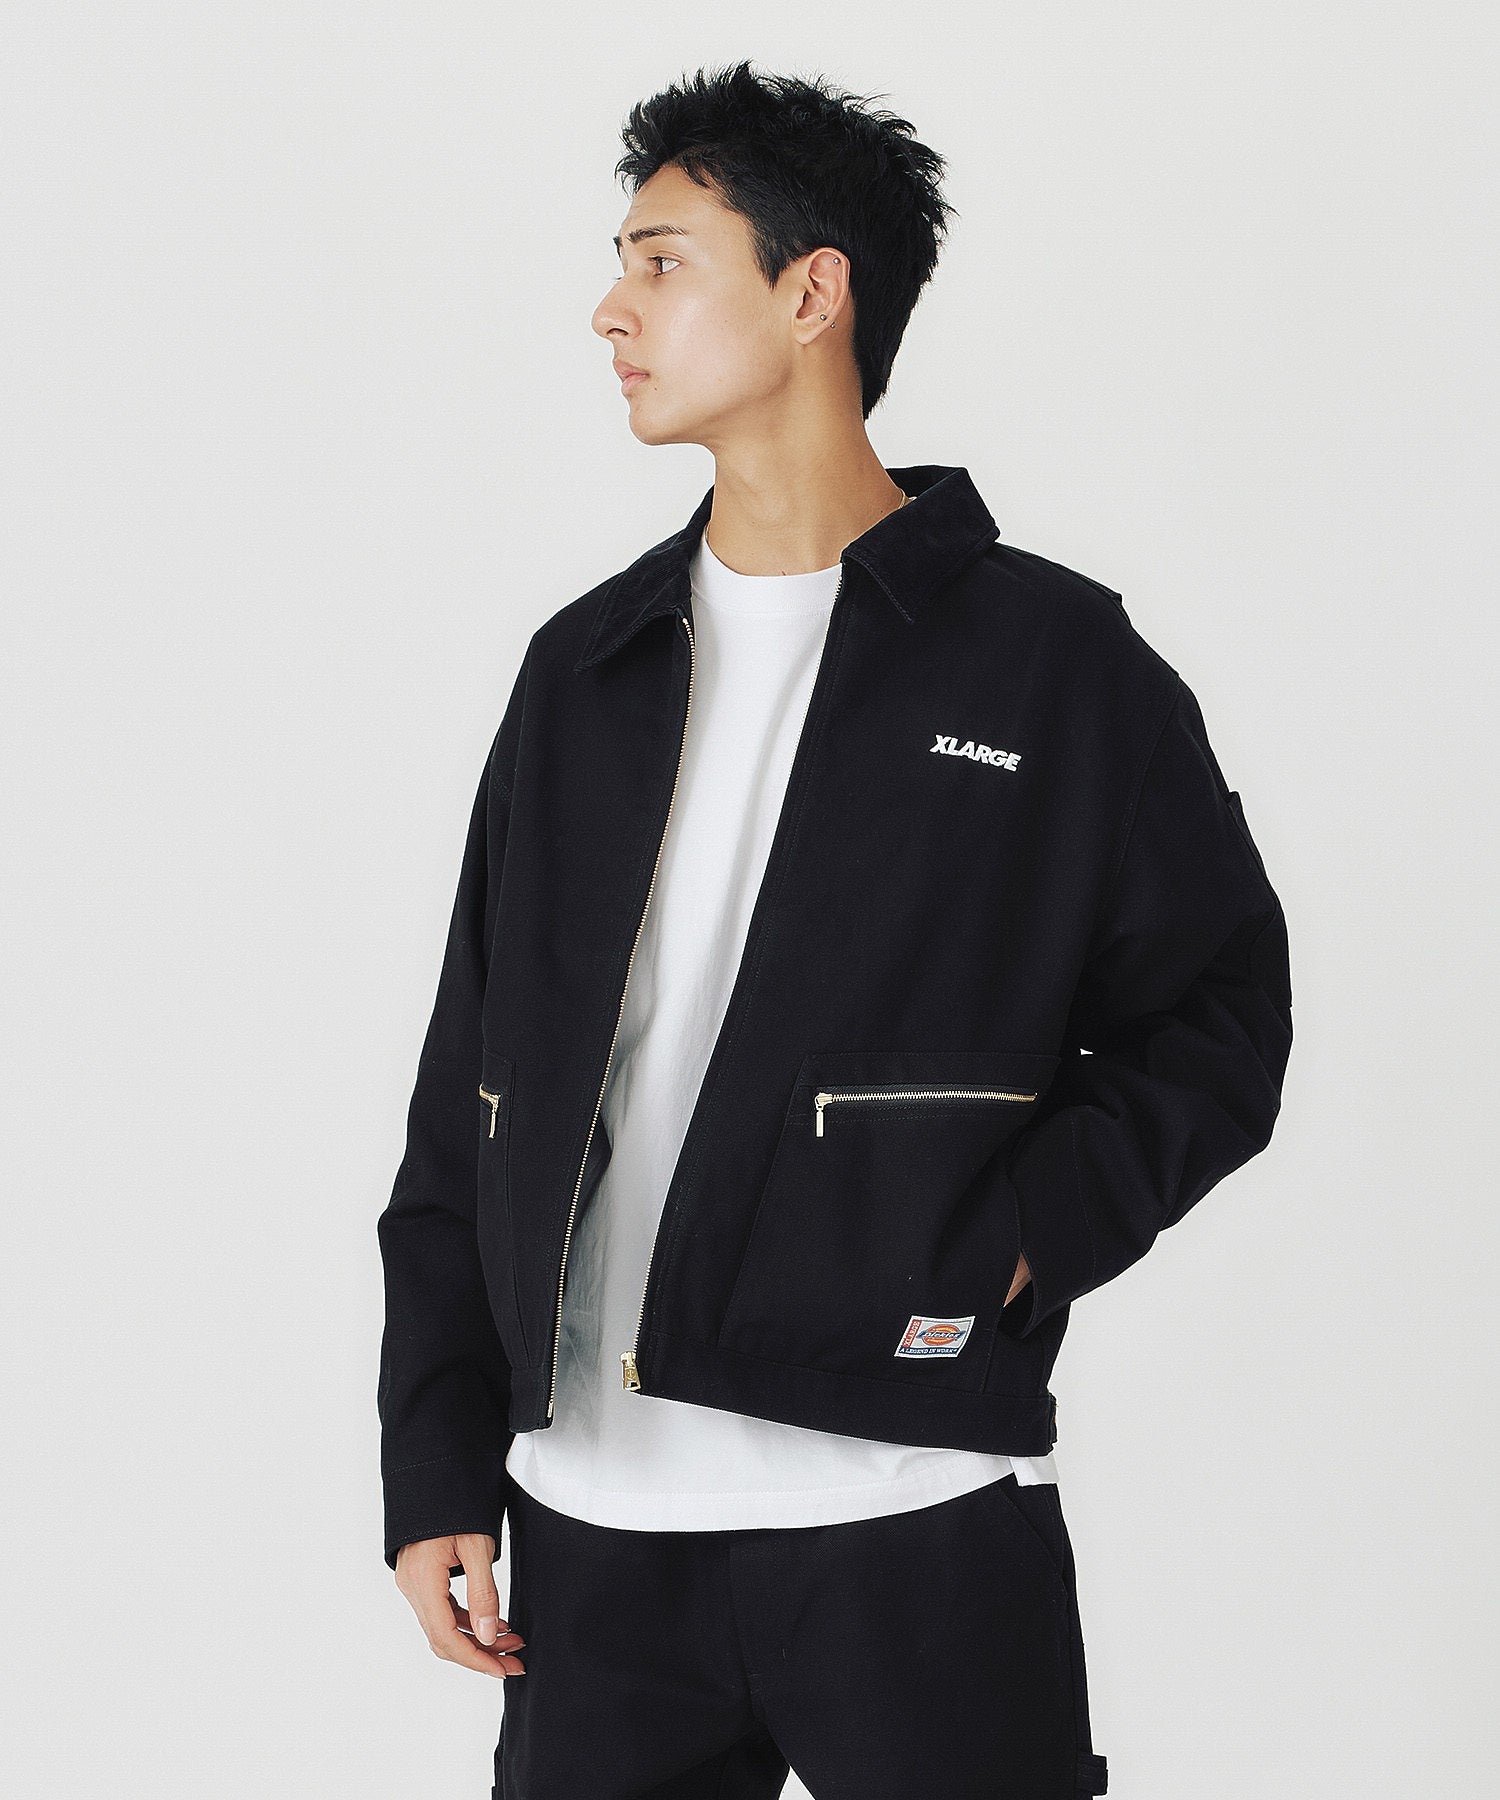 XLARGE×Dickies work jacket BLACK Lジャケット